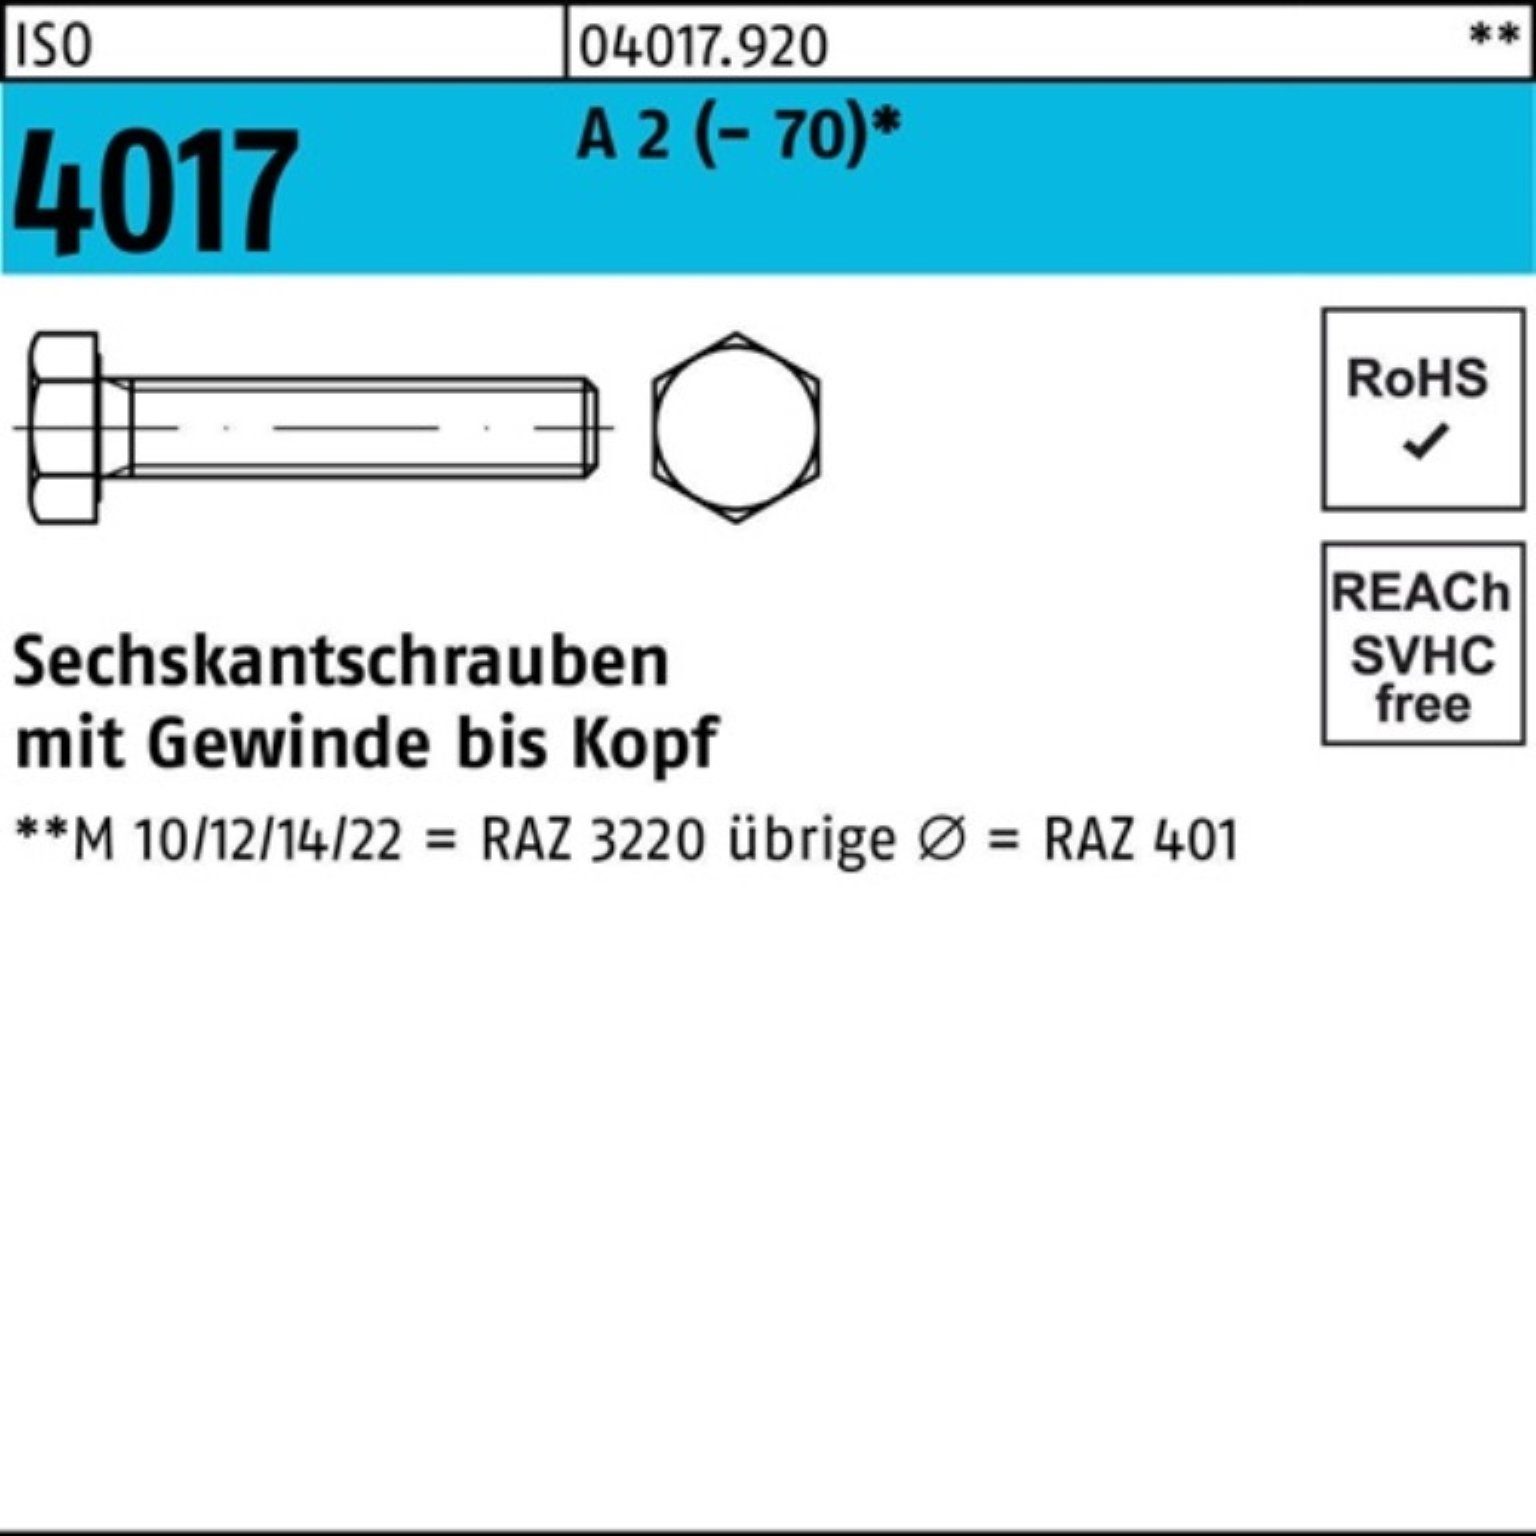 Bufab Sechskantschraube 100er Pack Sechskantschraube ISO 4017 VG M24x 65 A 2 (70) 10 Stück